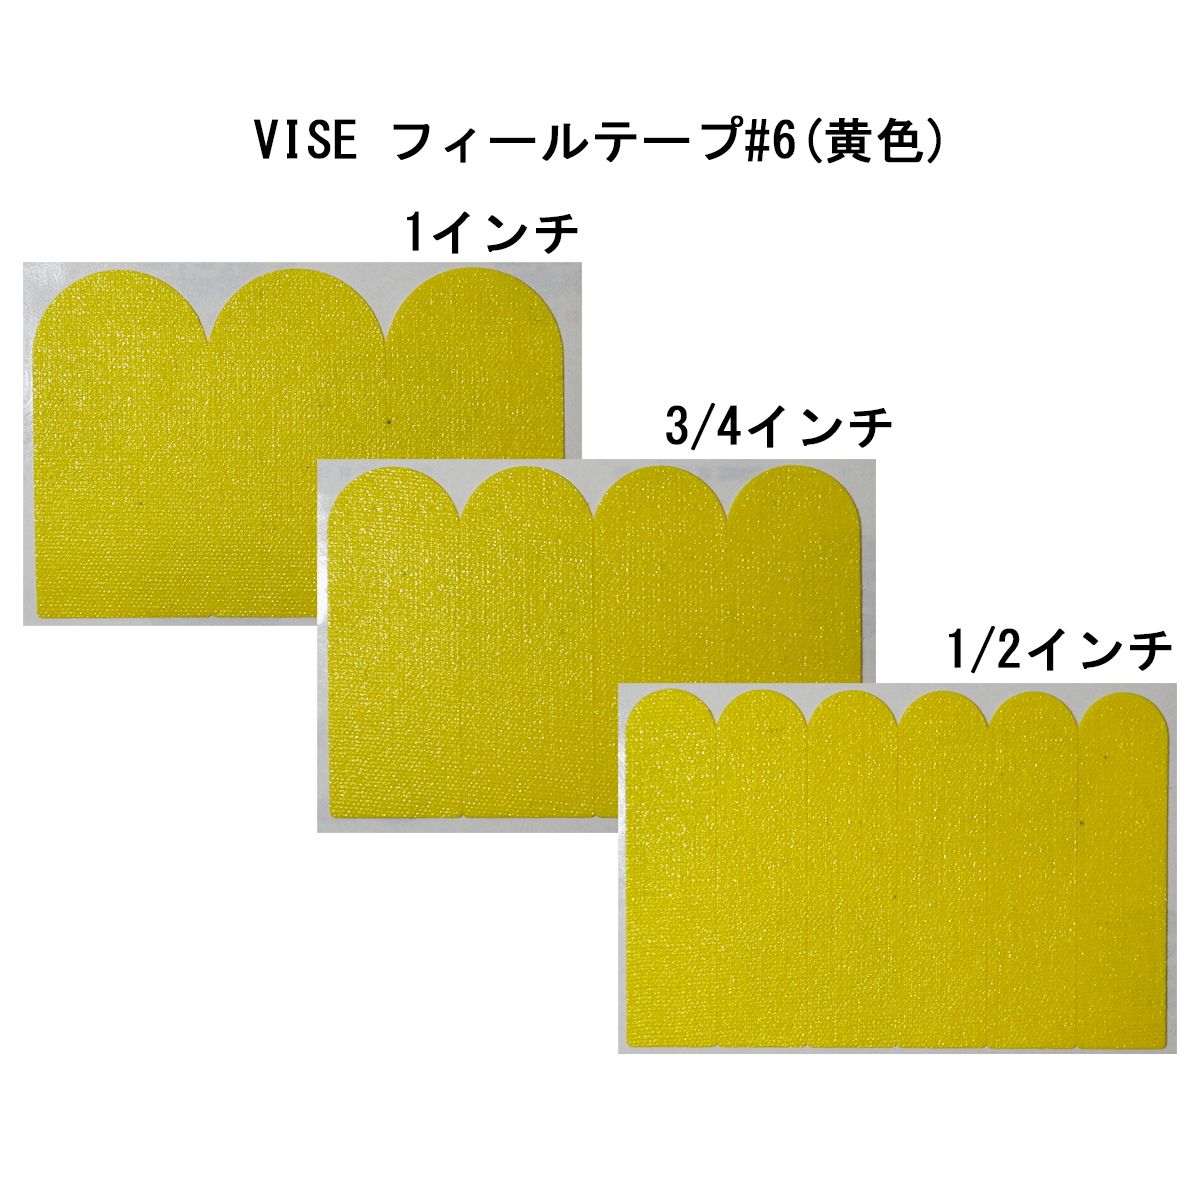 VISE フィールテープ#6(黄色) - ウインドウを閉じる